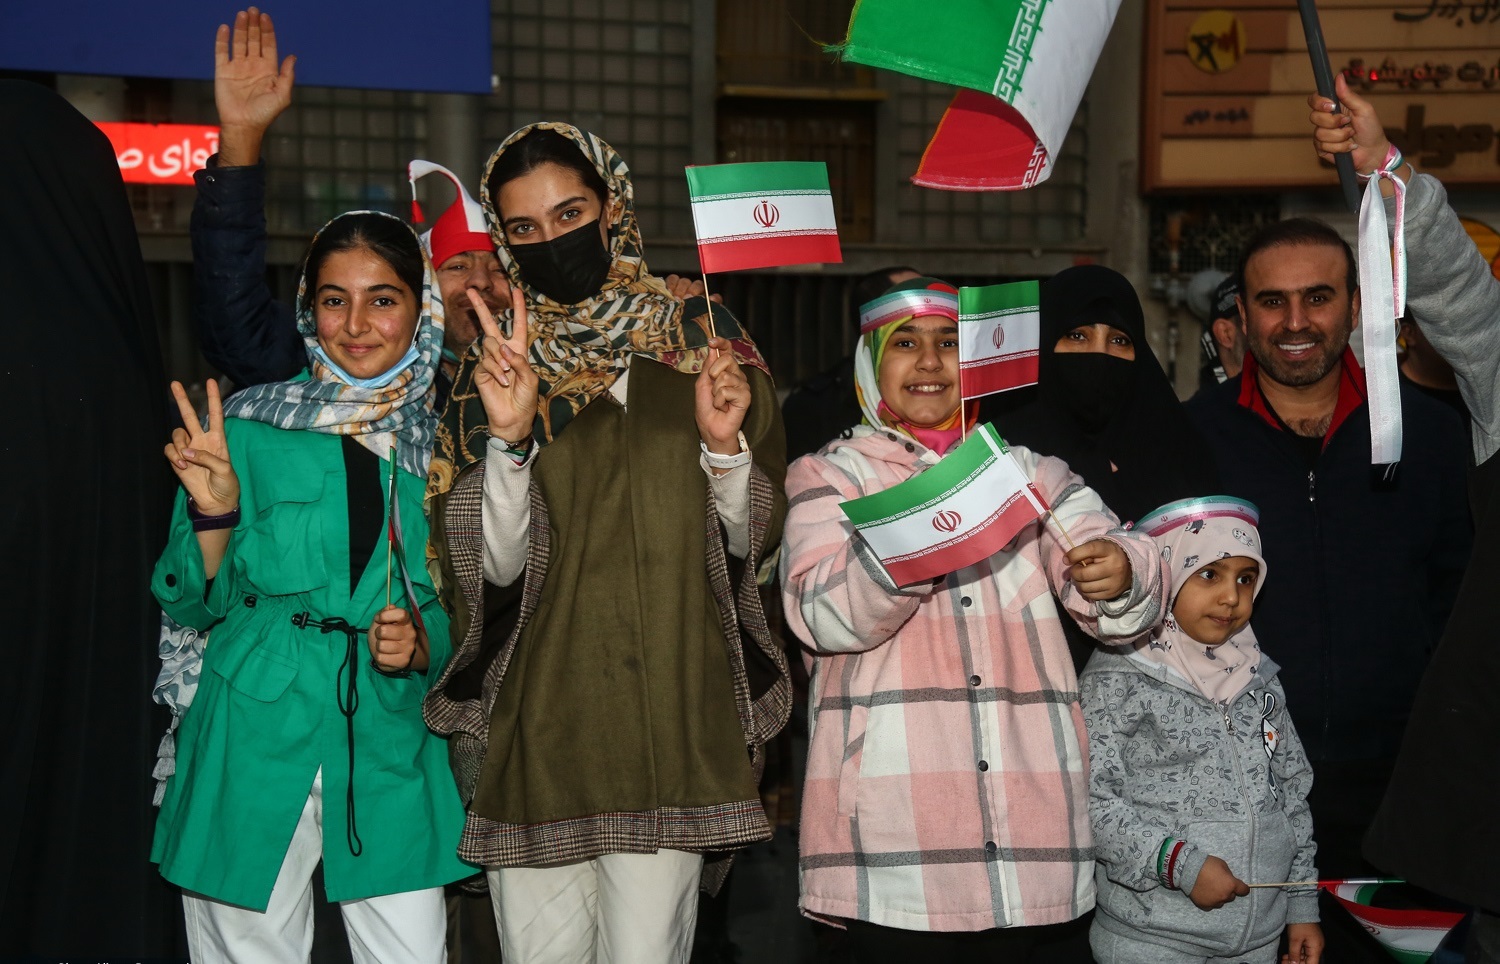 جشن خیابانی مردم فردیس پس از پیروزی تیم ملی مقابل ولز + فیلم//تکمیل نشده//